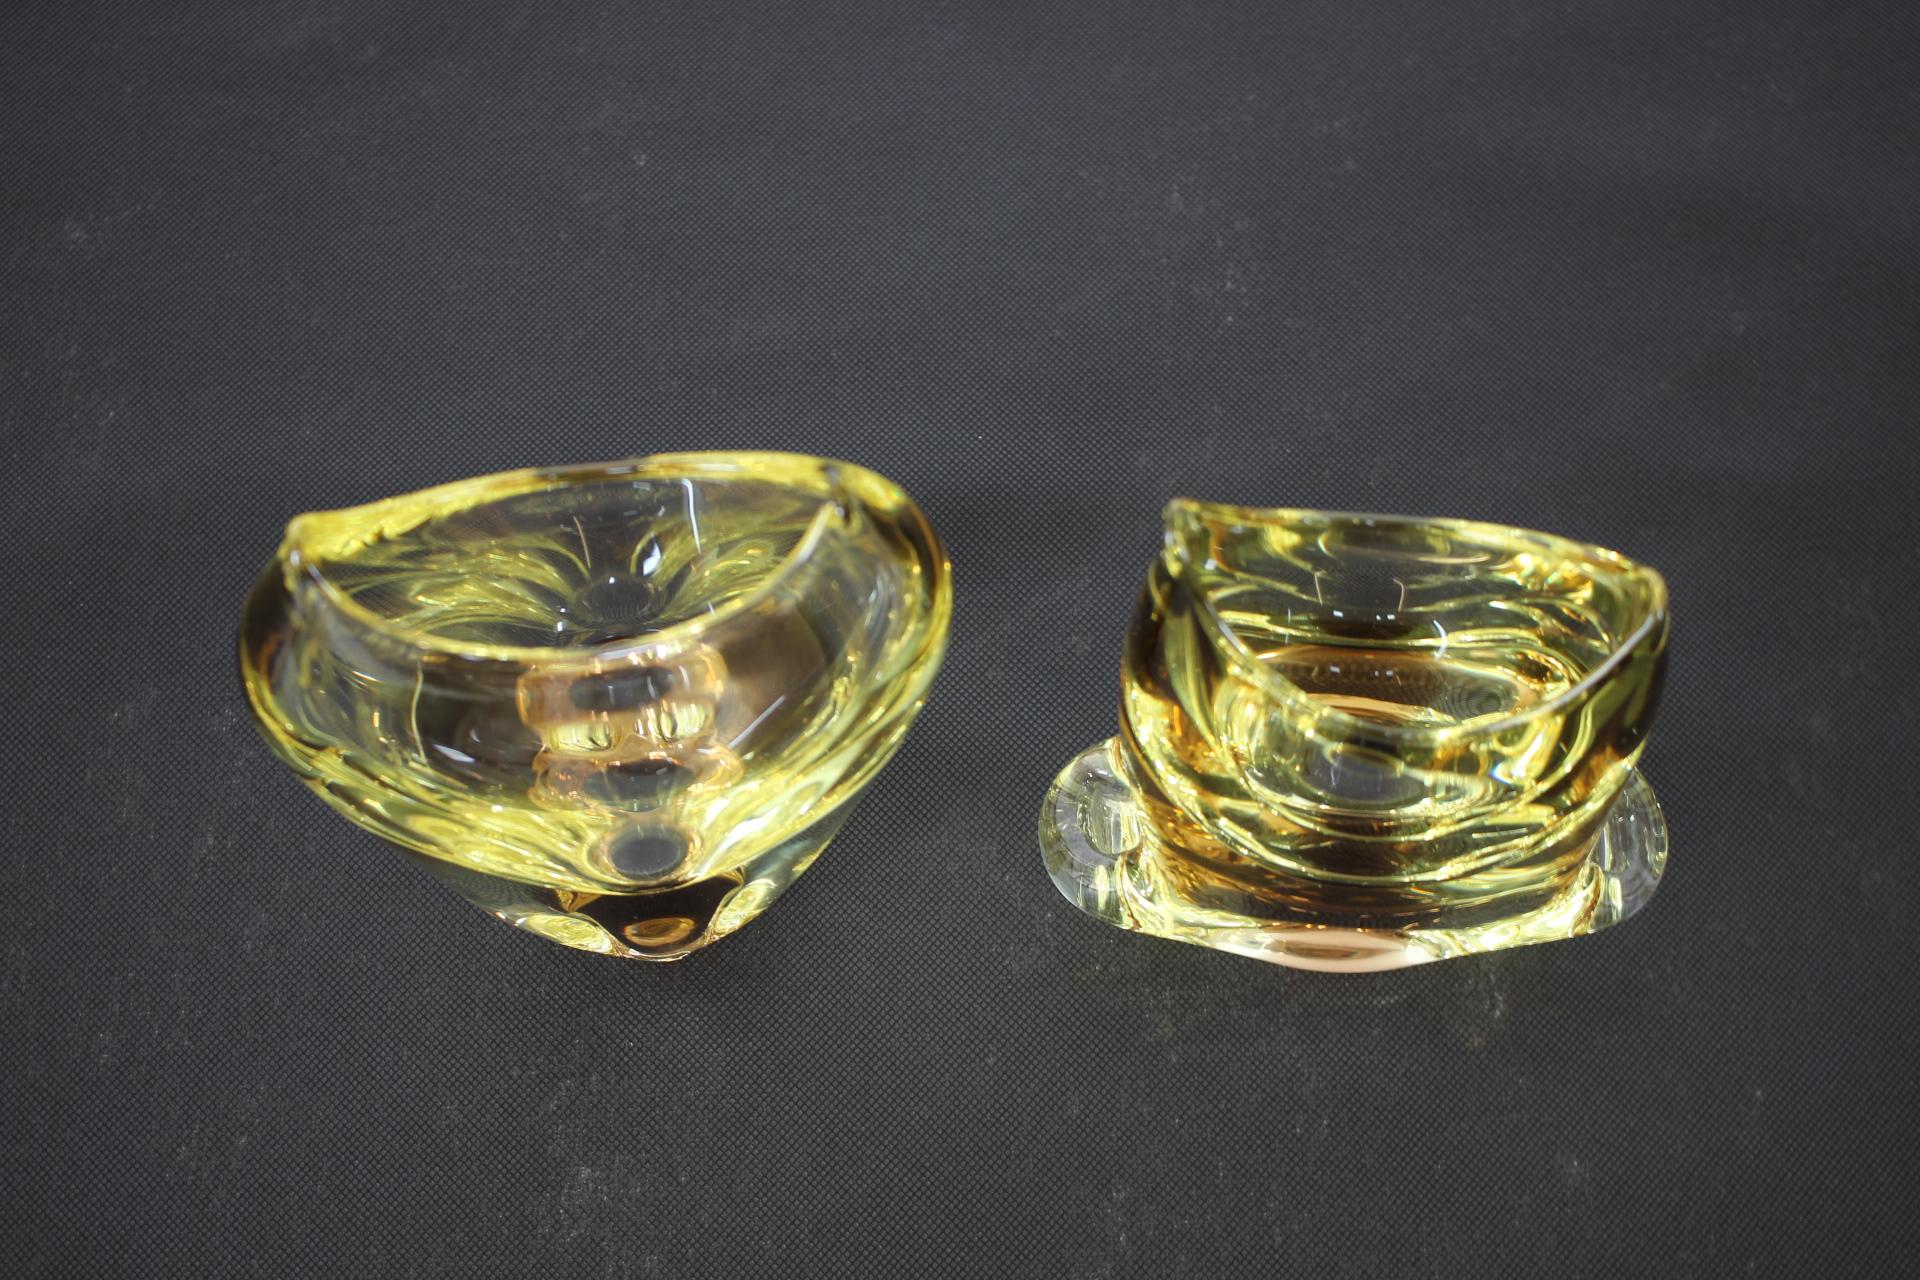 - Fabriqué en Tchécoslovaquie
- En verre
- Les dimensions du petit vase sont H 17 x L 14 x P 6
- Re-polissage
- Très bon état d'origine.